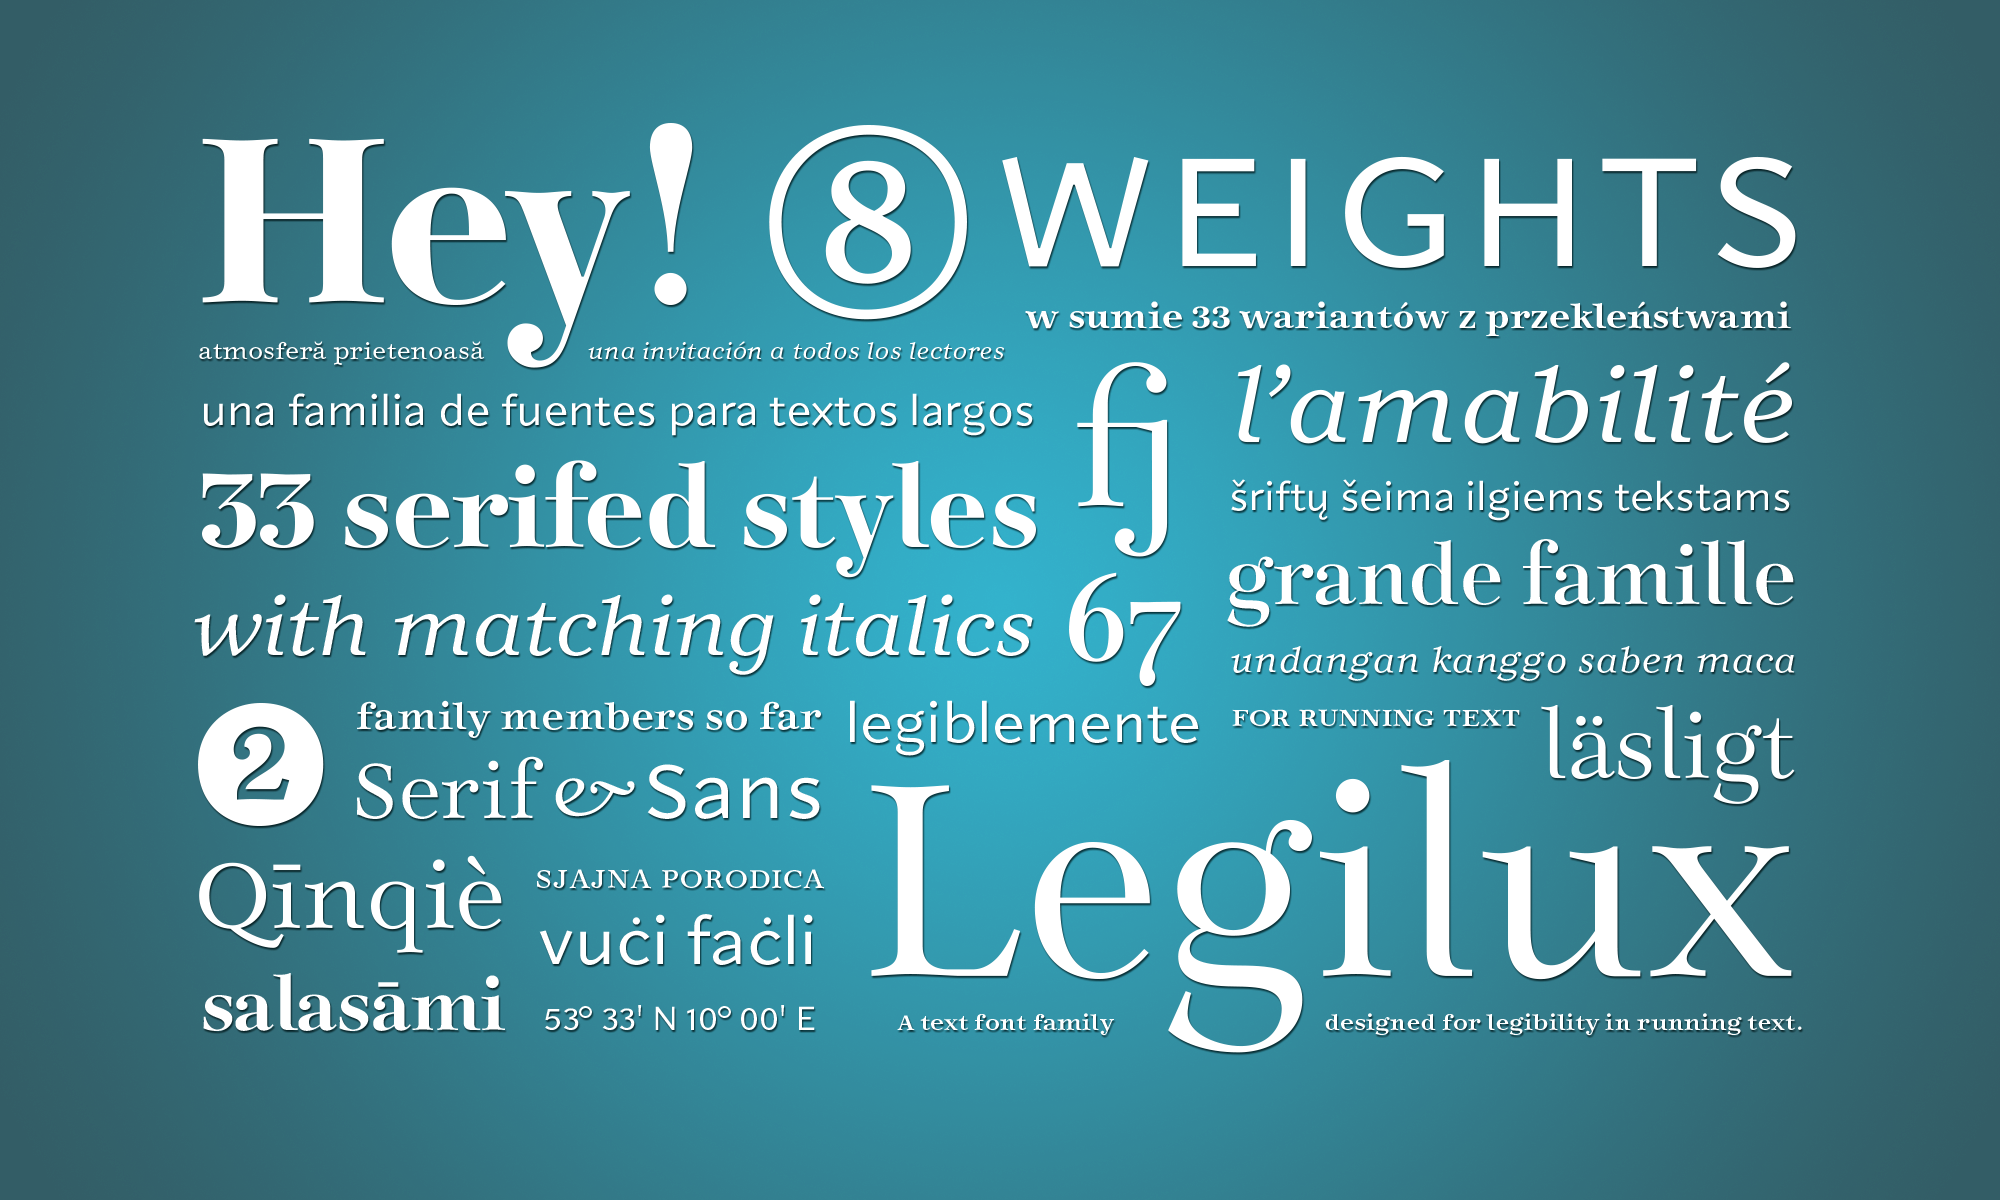 Legilux typeface family with focus on legibility